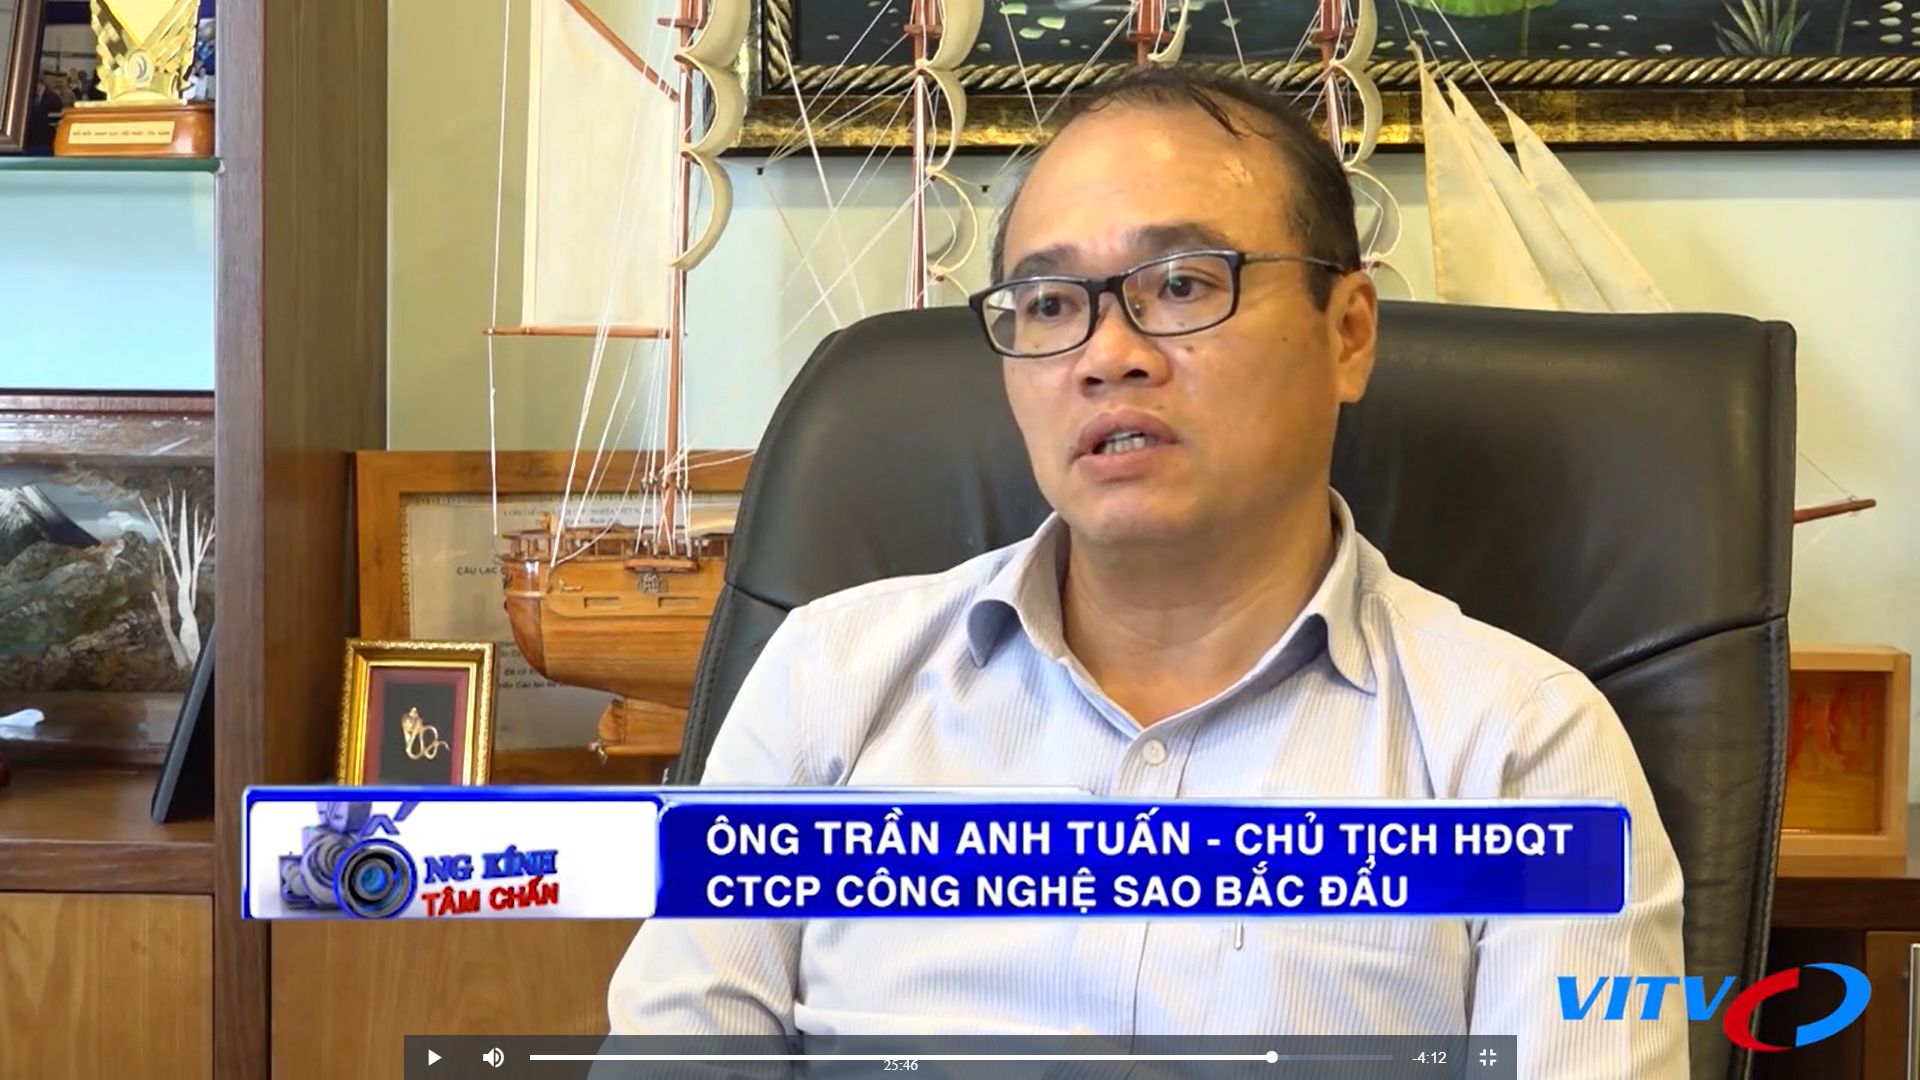 Chủ tịch HĐQT Công ty CPCN Sao Bắc Đẩu chia sẻ về câu chuyện Chuyển đổi số cùng đài truyền hình VITV (SCTV8)